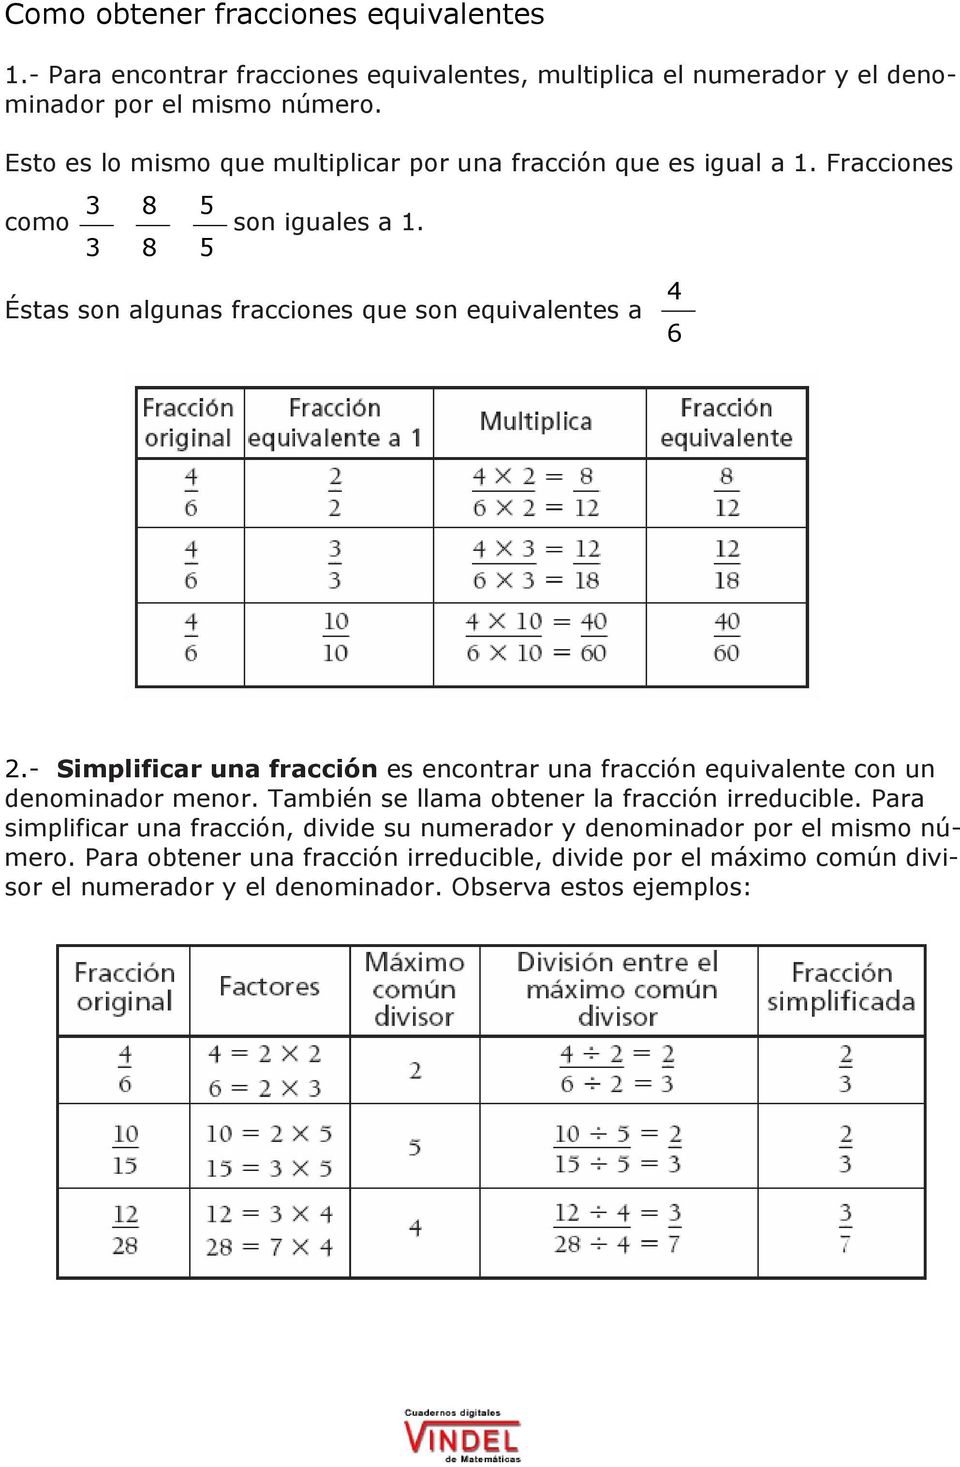 - Simplificar una fracción es encontrar una fracción equivalente con un denominador menor. También se llama obtener la fracción irreducible.